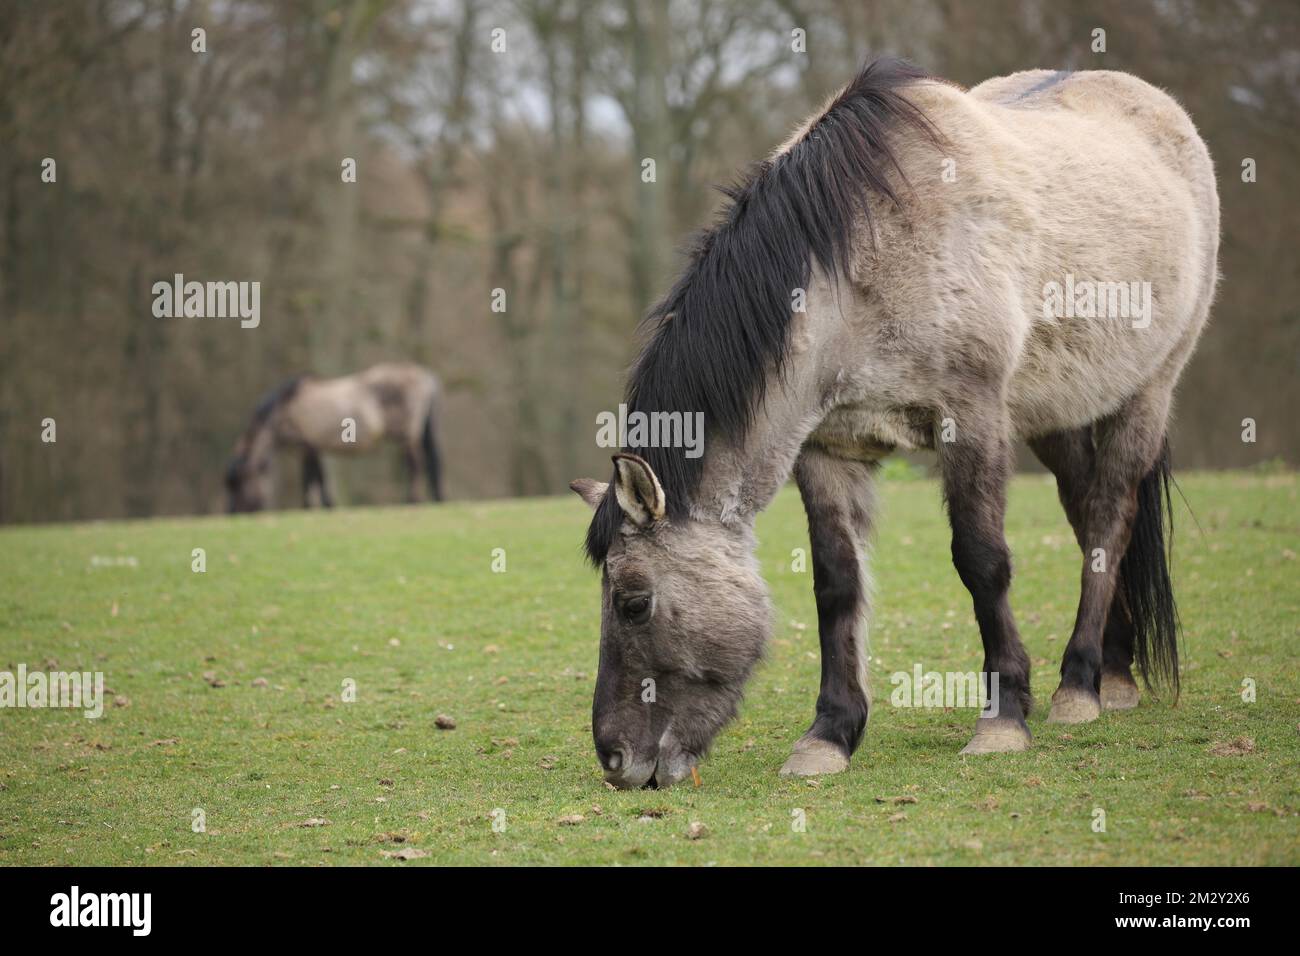 Tarpan (Equus ferus ferus), mangiare, mangiare, due, blurctive Foto Stock